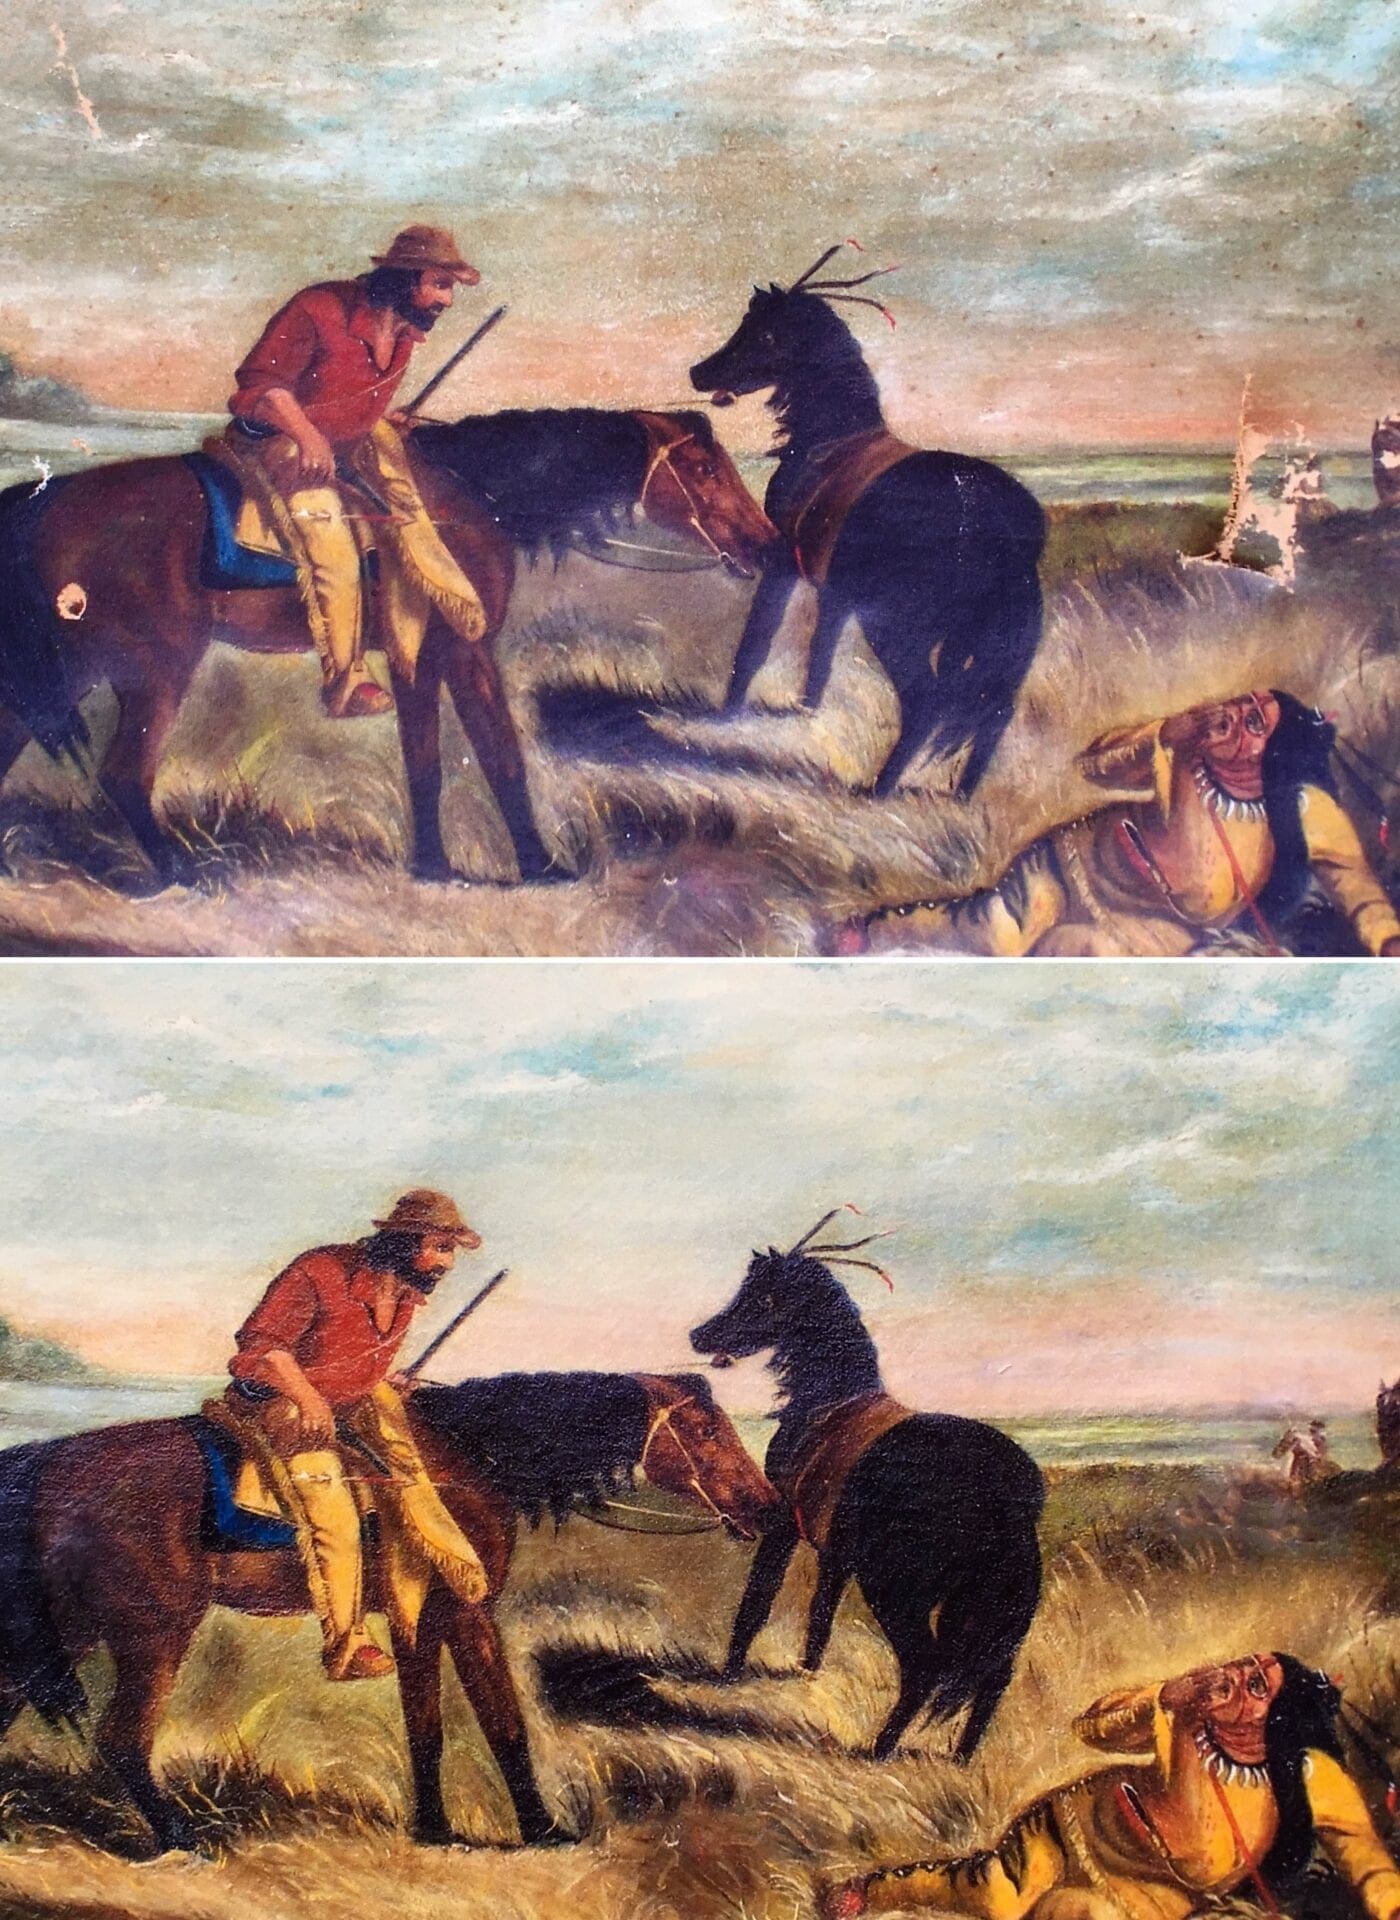 A painting of two men on horseback in the desert.